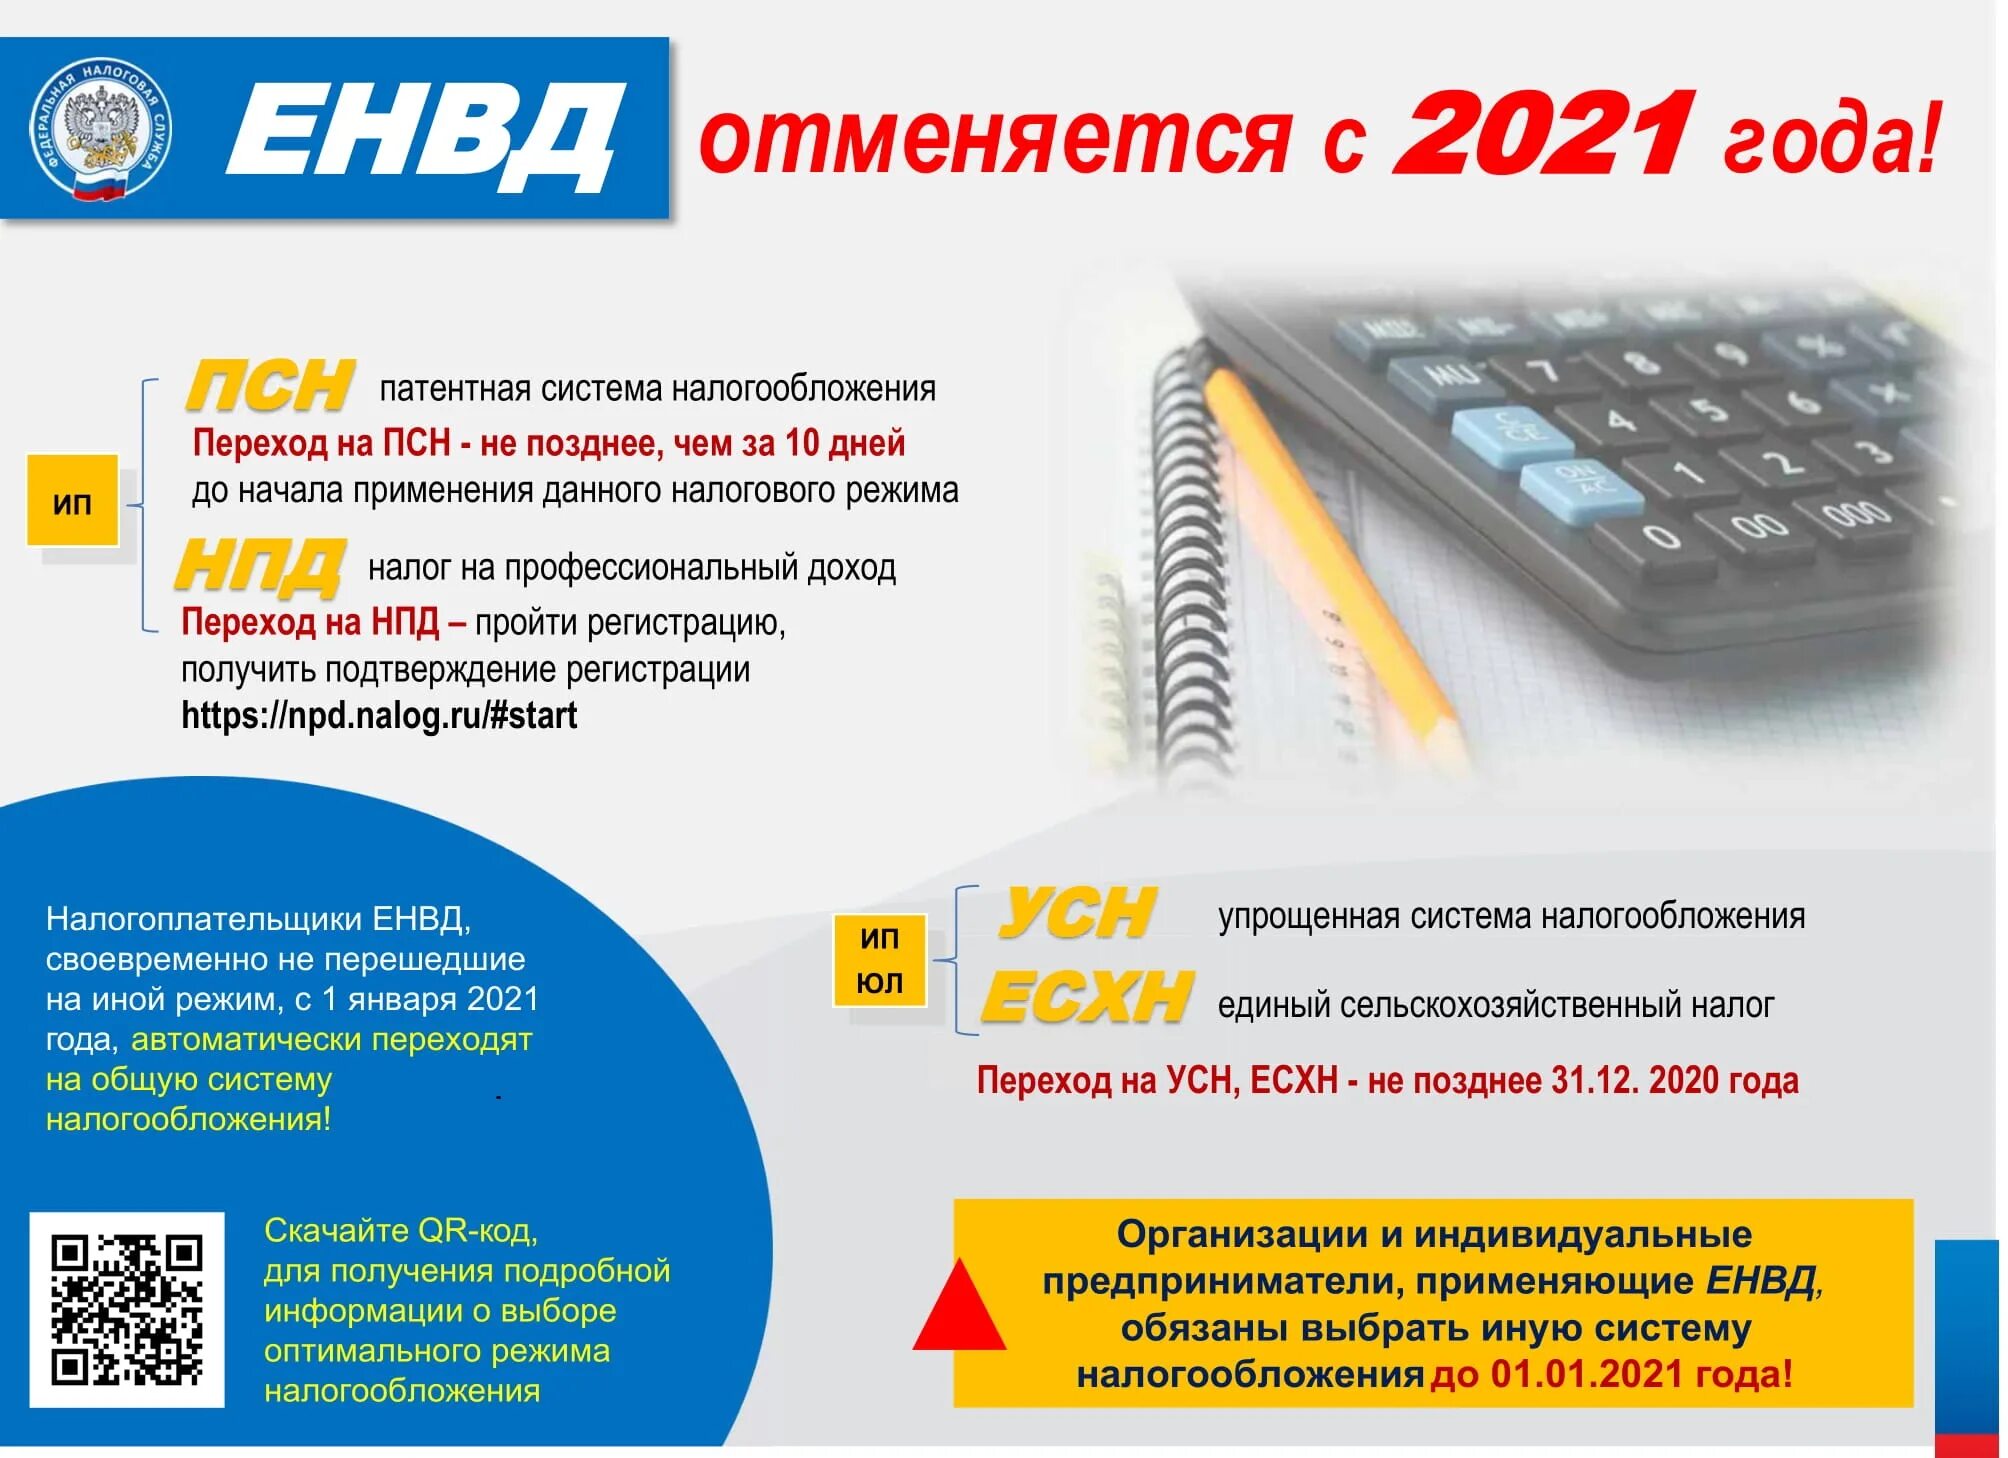 Налог ип 2021. Системы налогообложения 2021. Налоговые режимы 2021. Системы налогообложения для ИП В 2021. Патентная система налогообложения в 2021 году для ИП.